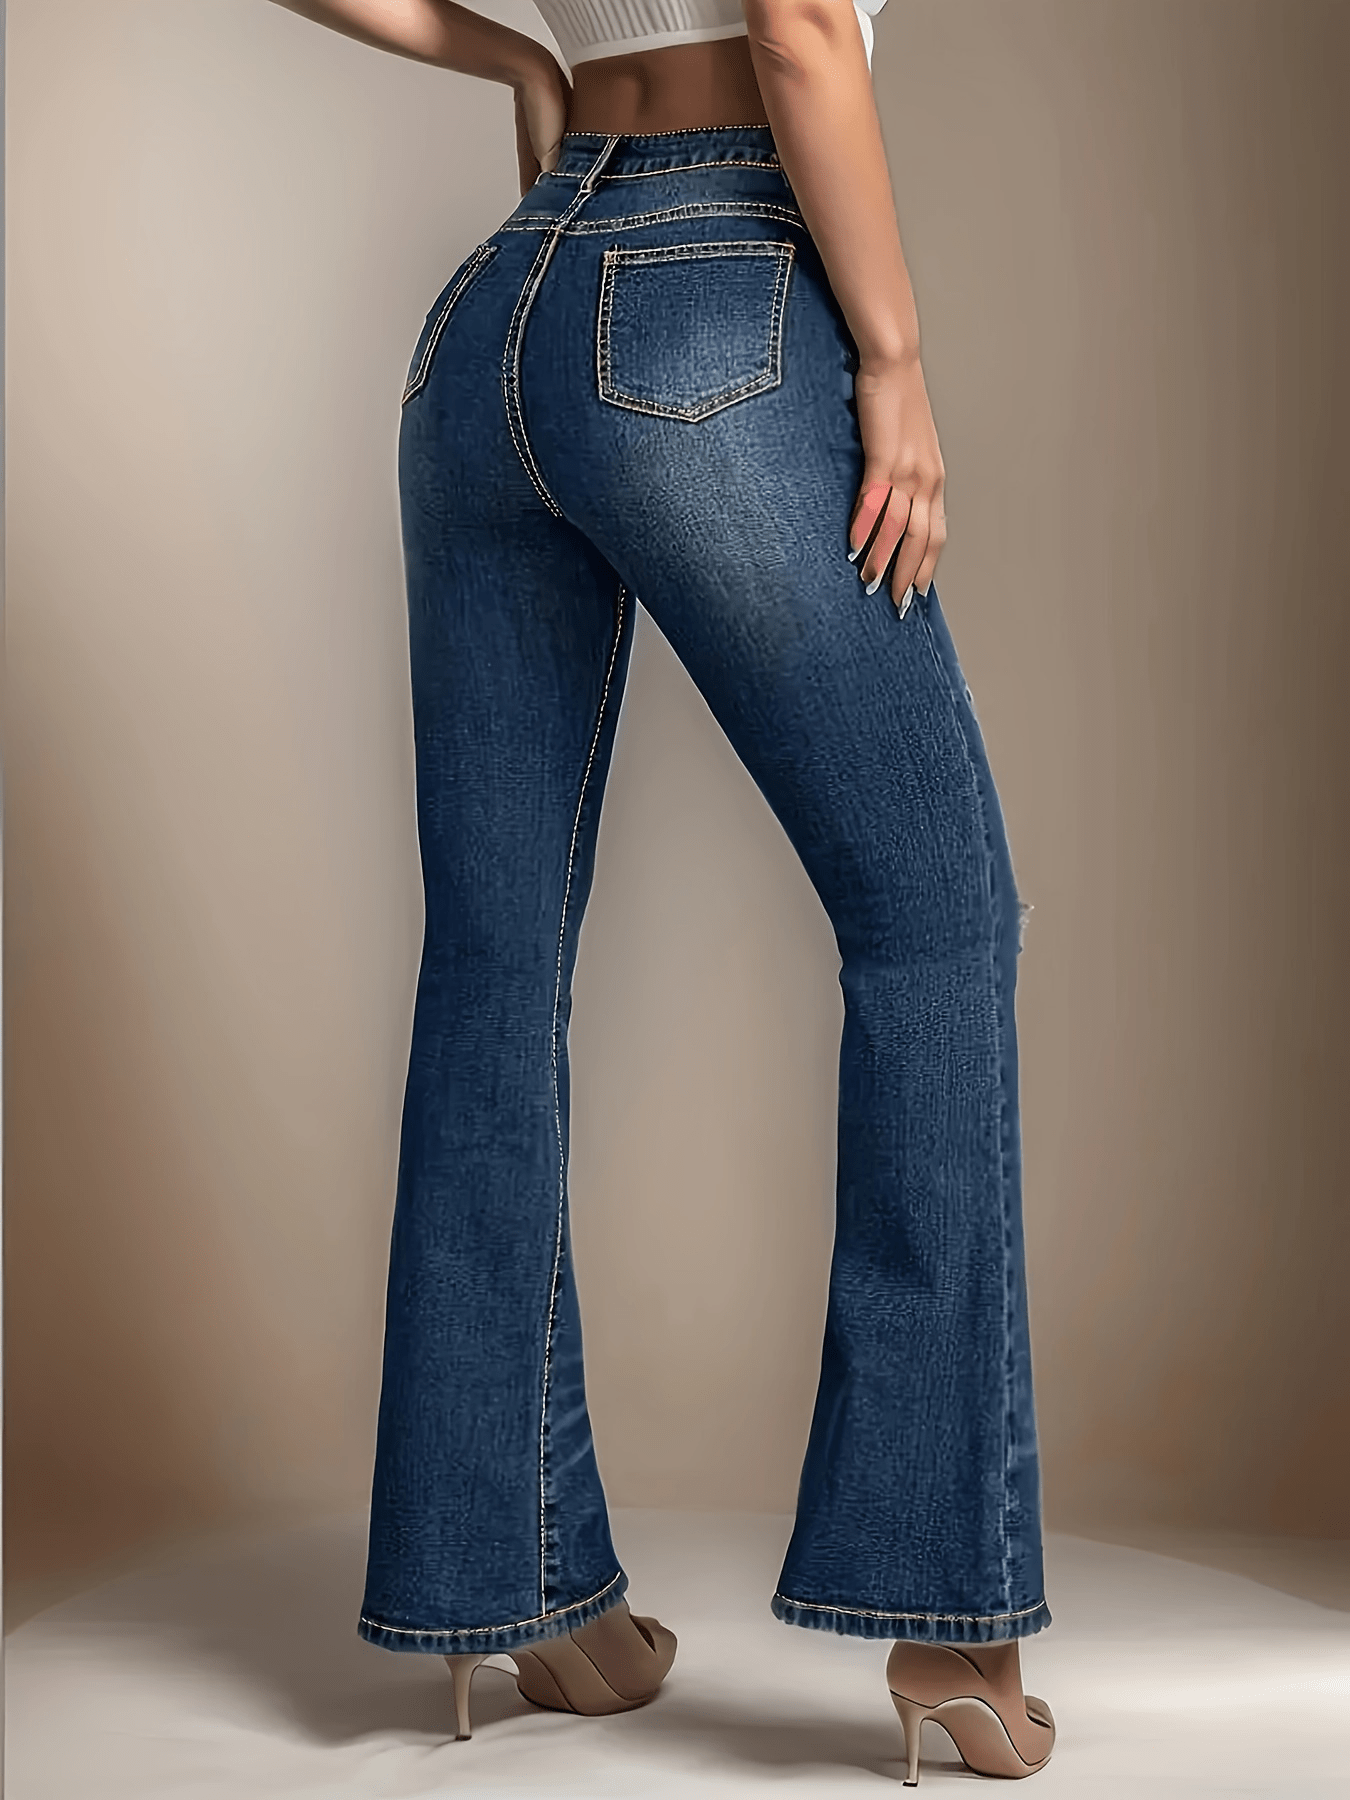  Pantalones de trabajo elásticos para mujer, diseño